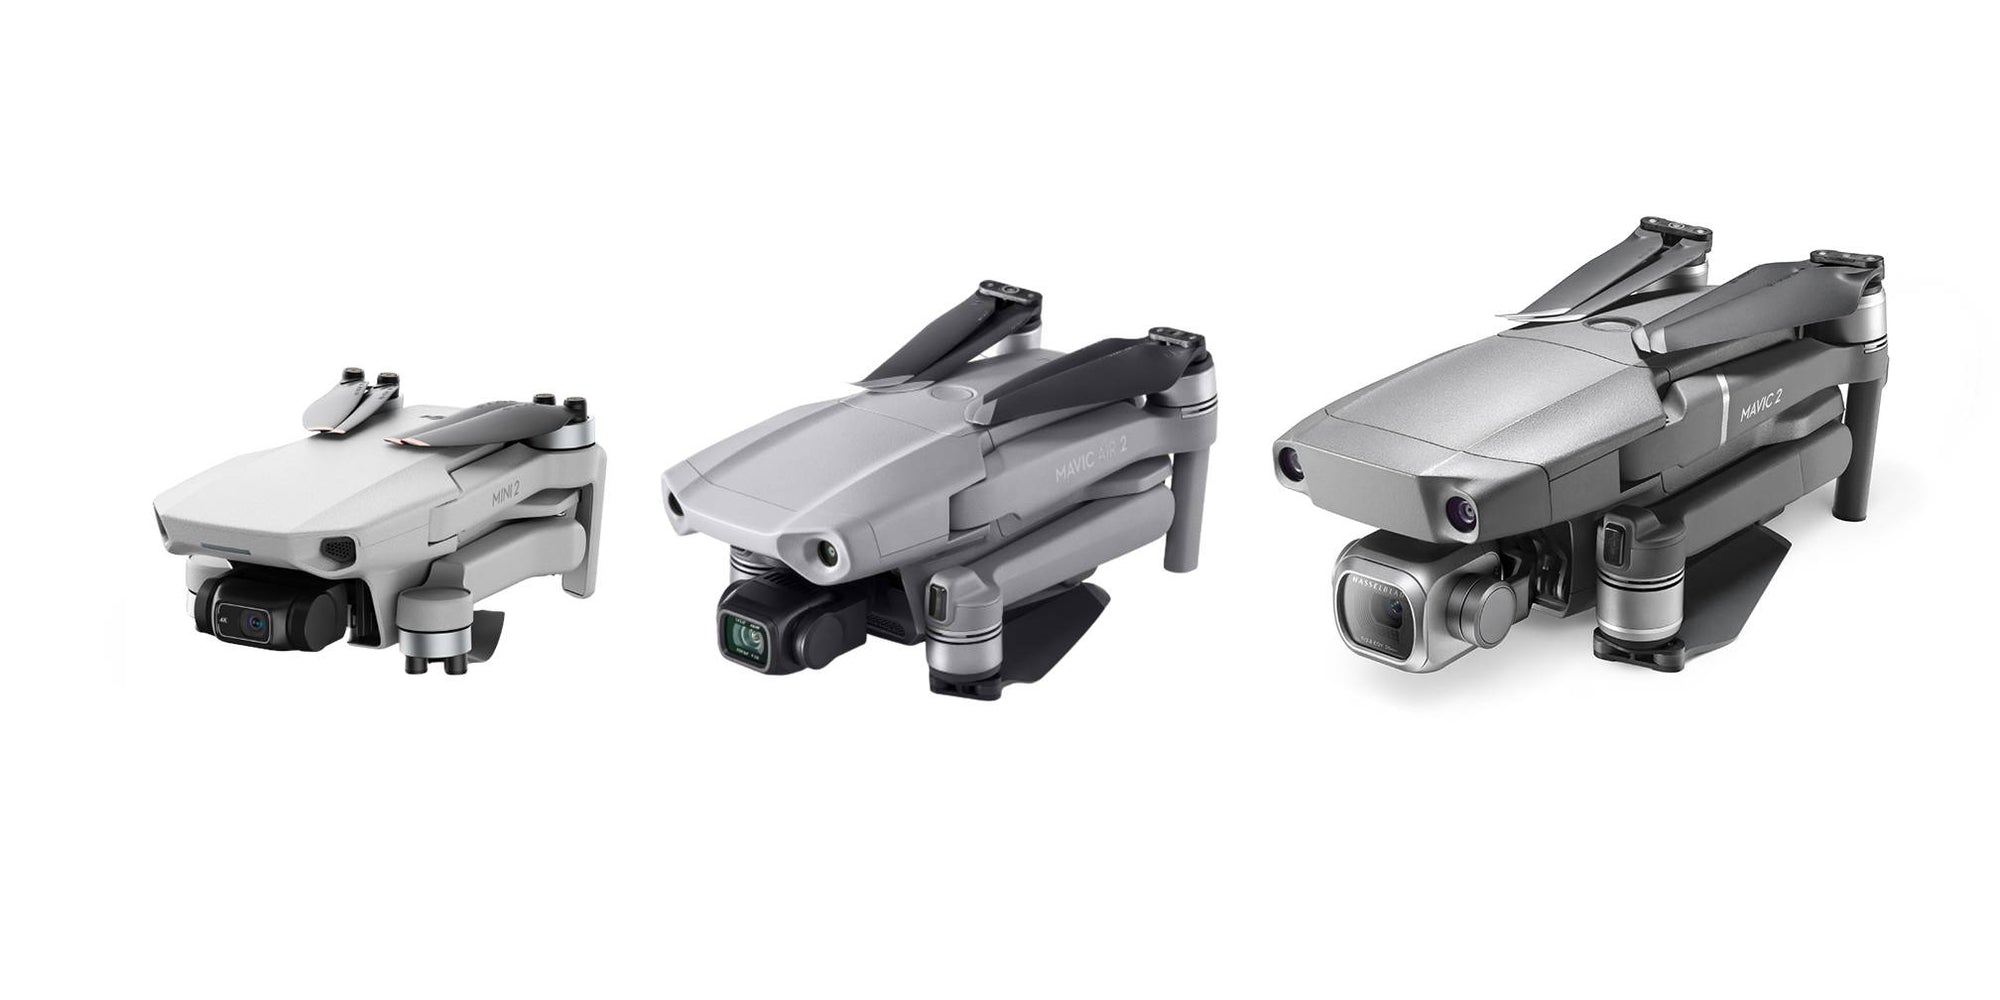 DJI Mini 2 Vs Mavic Air 2 Vs Mavic 2 Comparison: Which Consumer Drone Is Right For You?